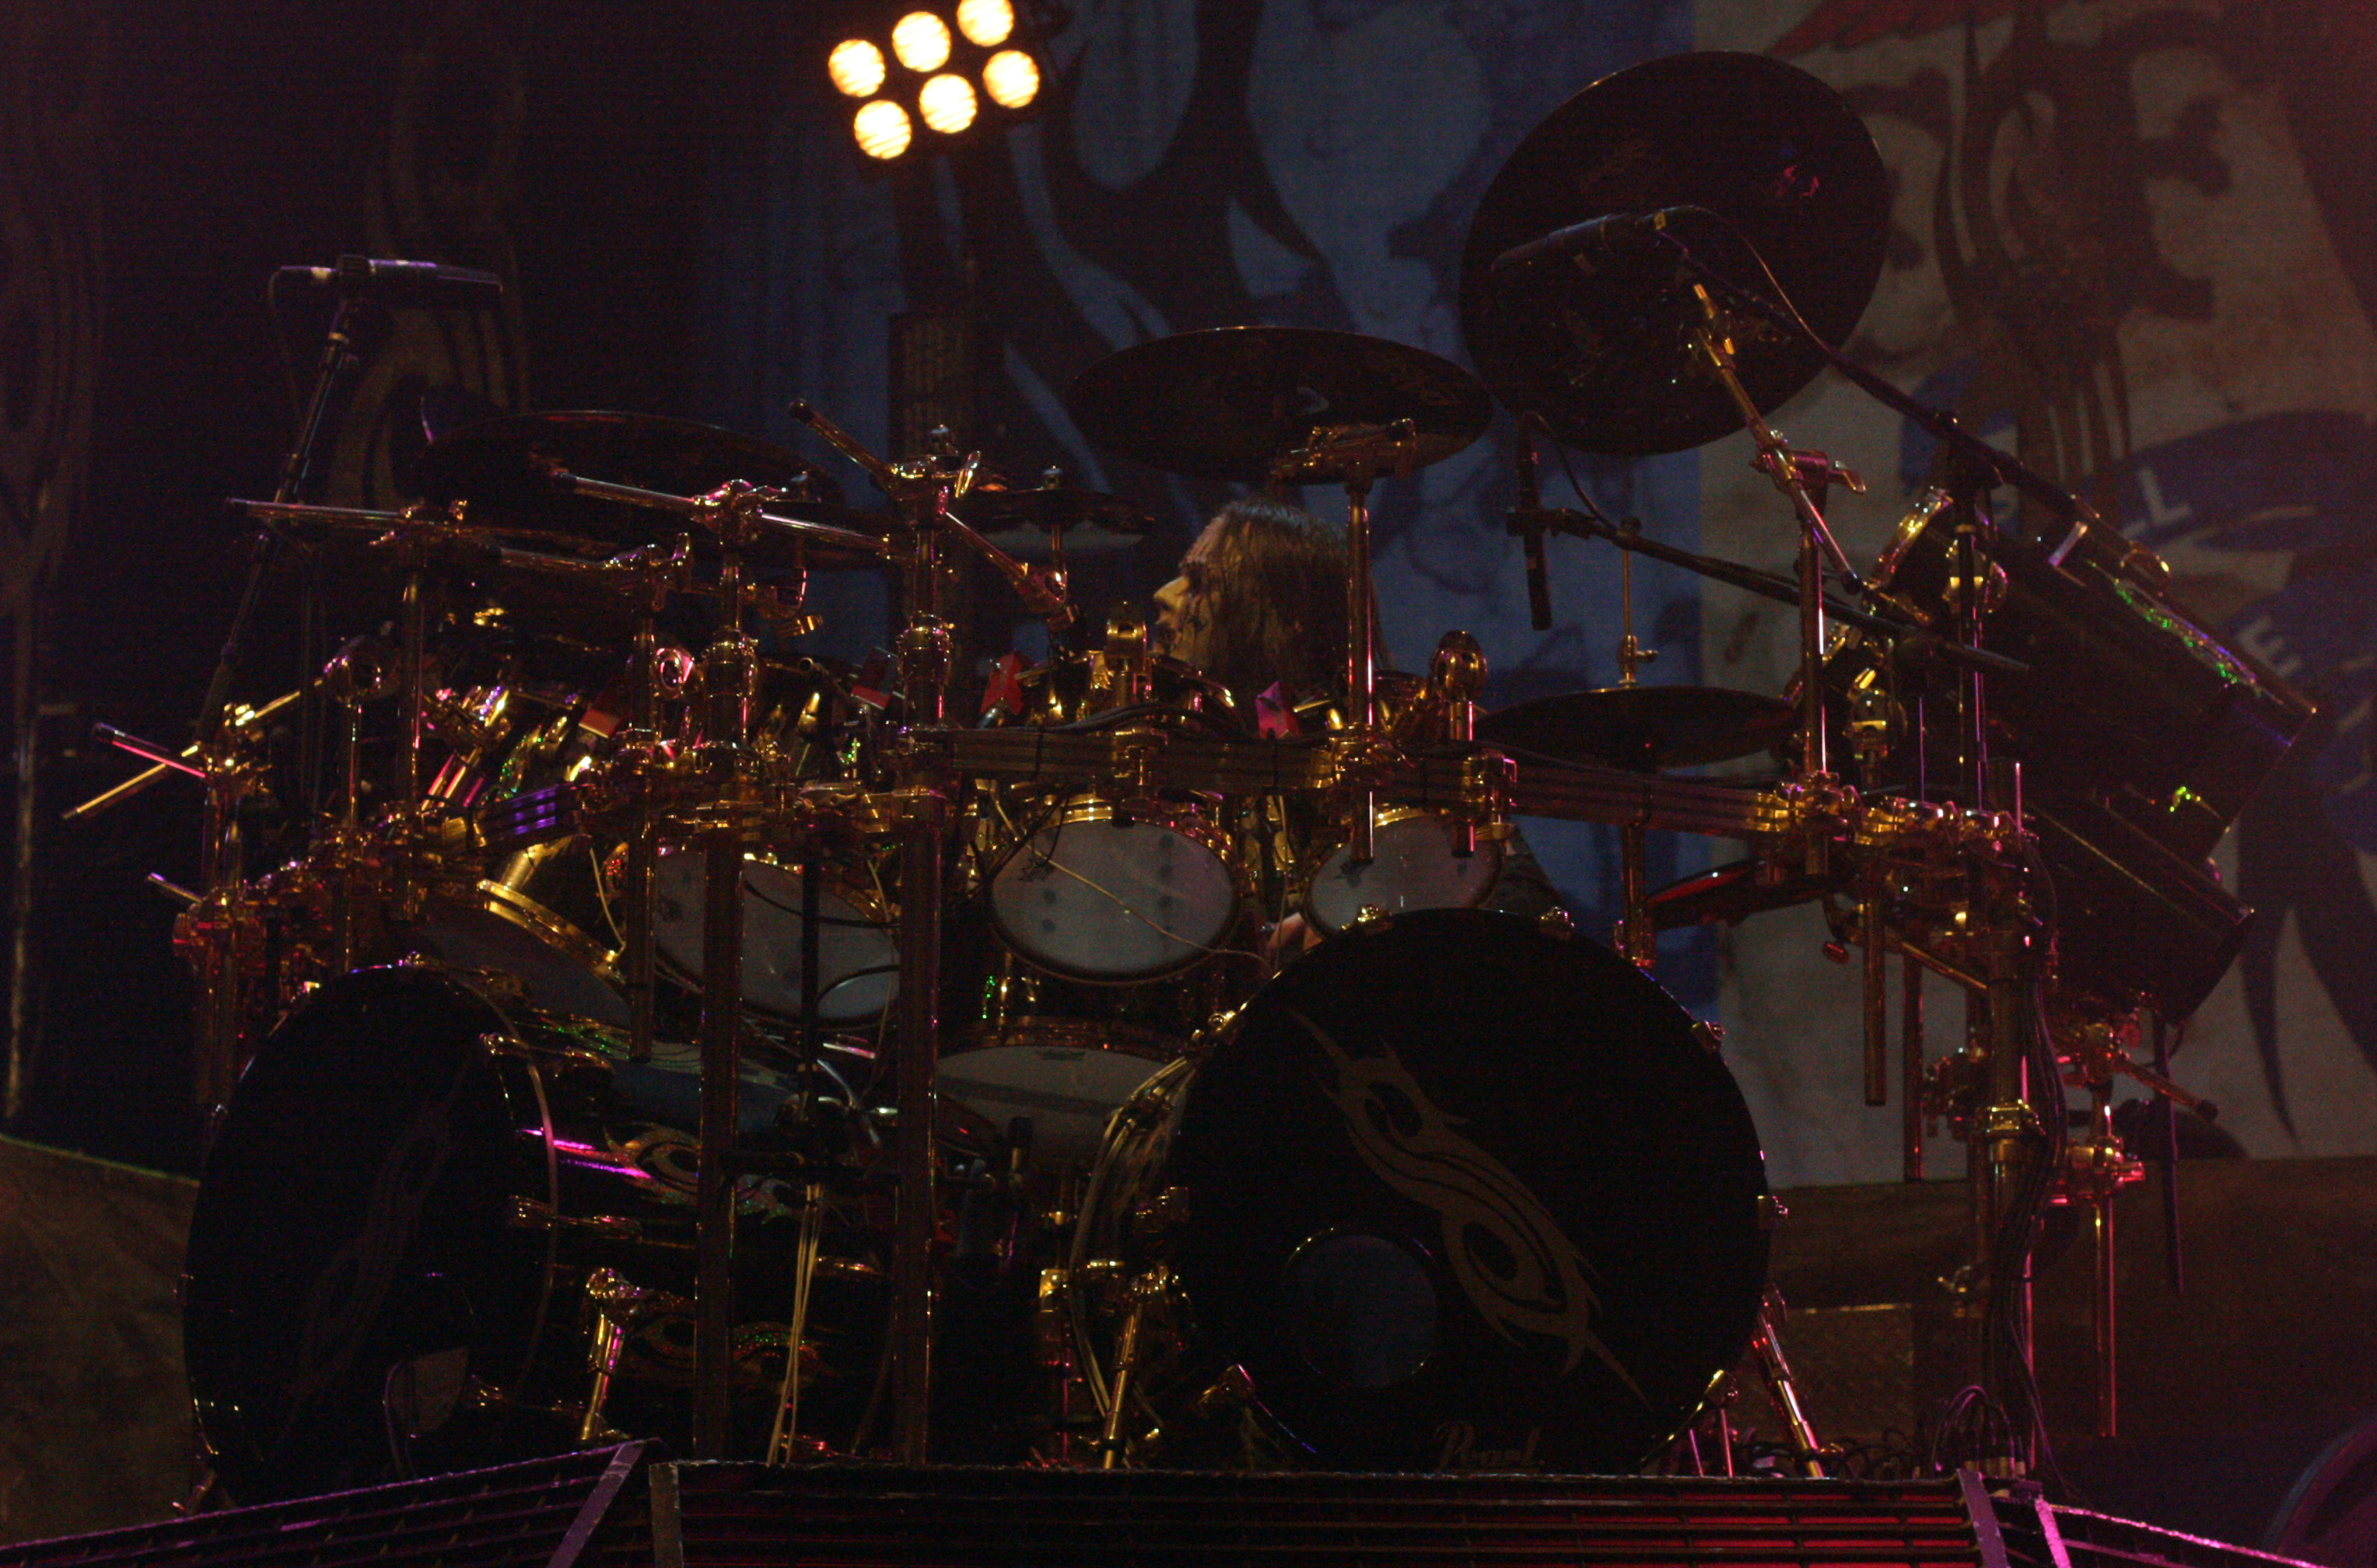 Joey Jordison At Mayhen Fest - Joey Jordison 2009 , HD Wallpaper & Backgrounds